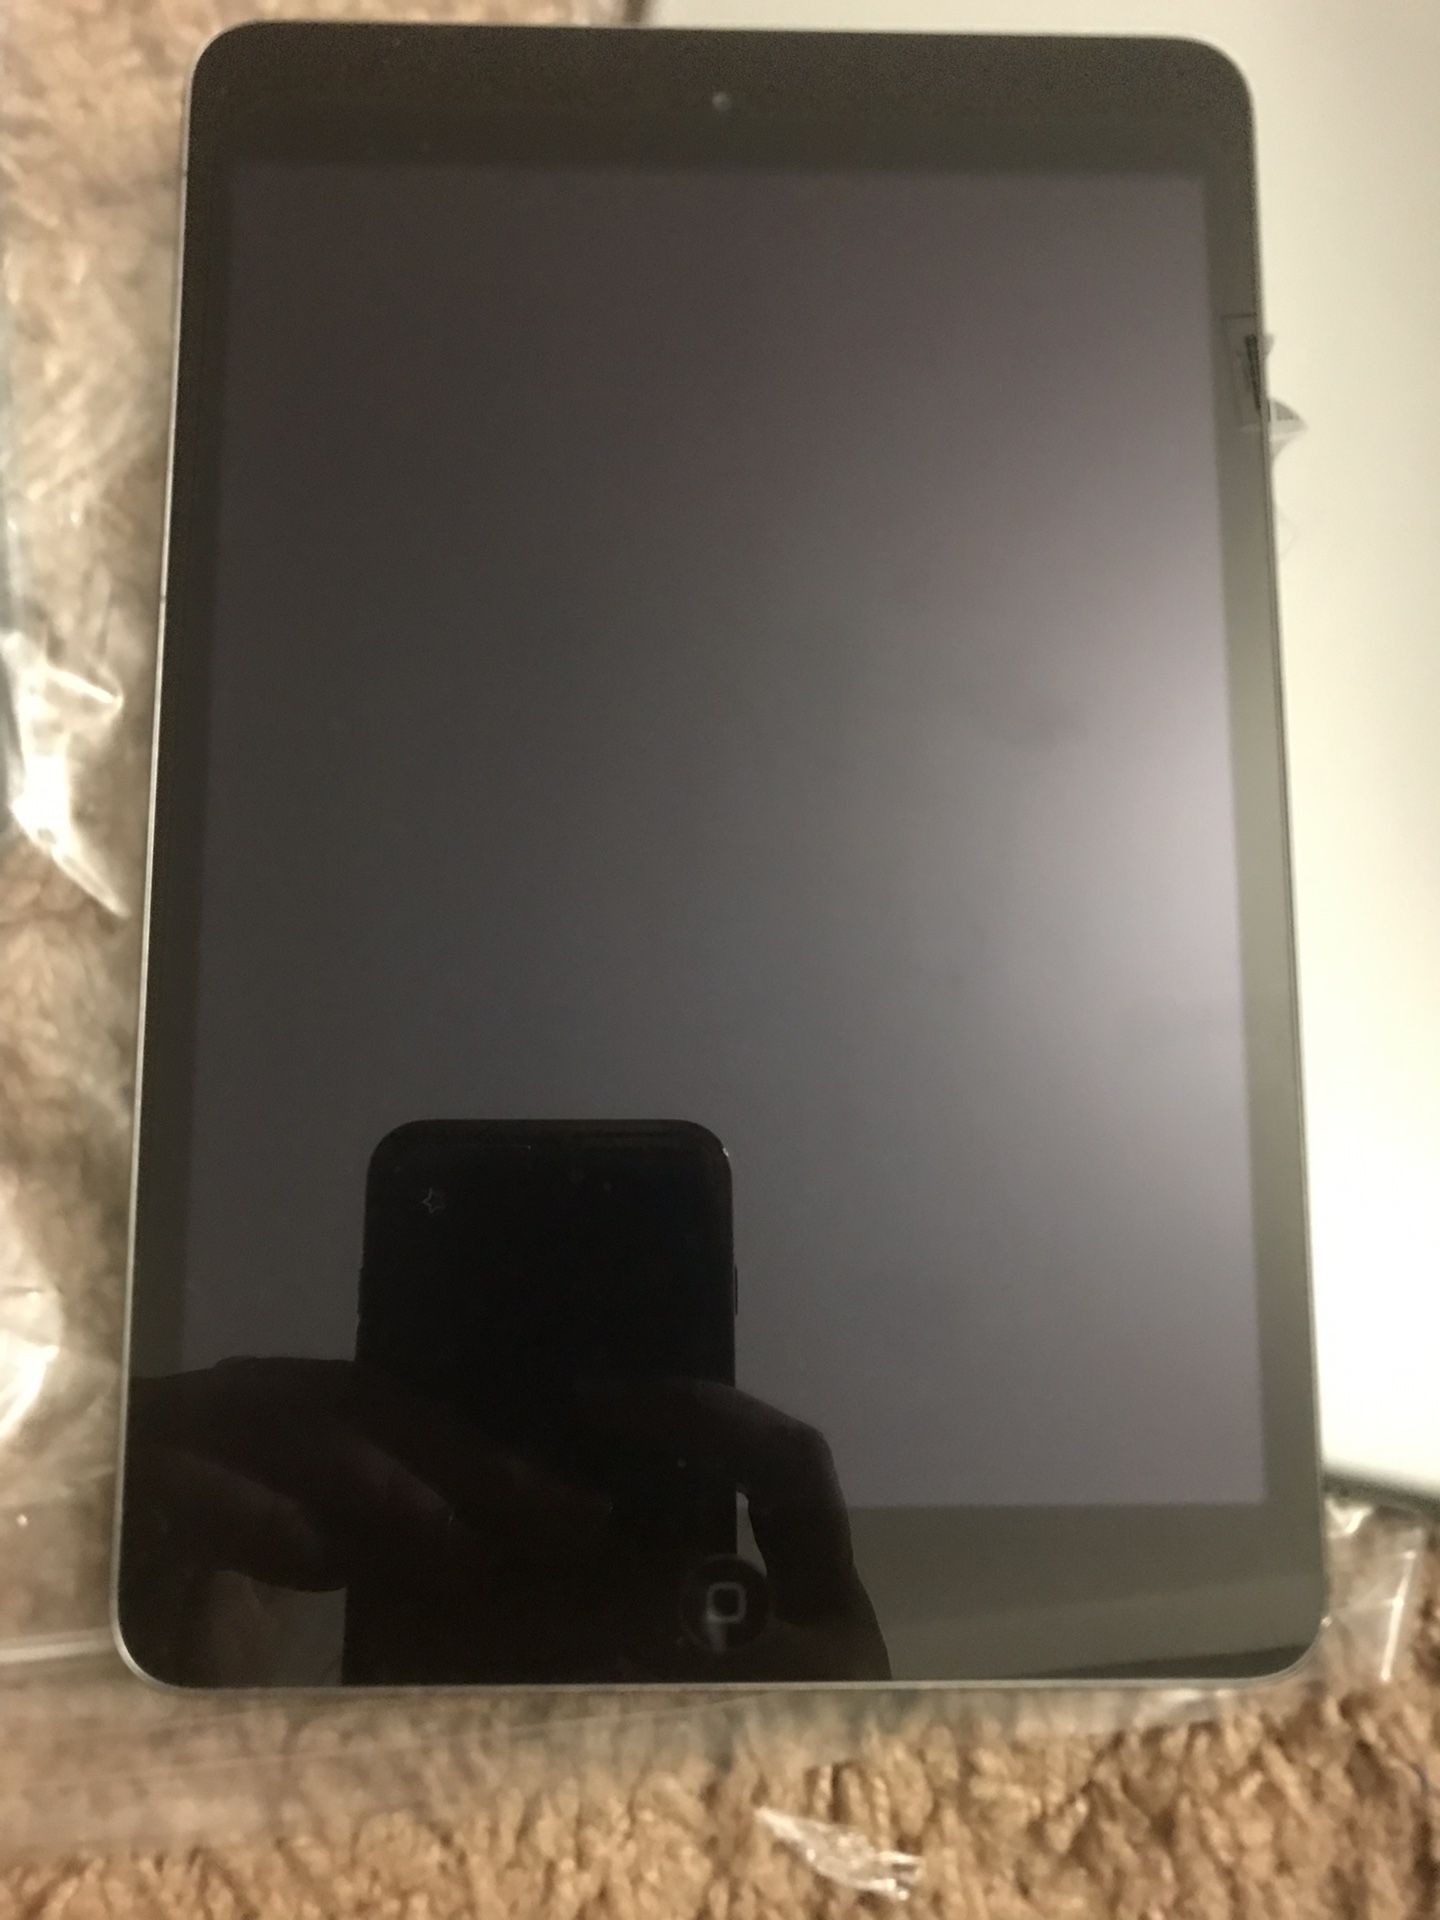 iPad mini2 brand new